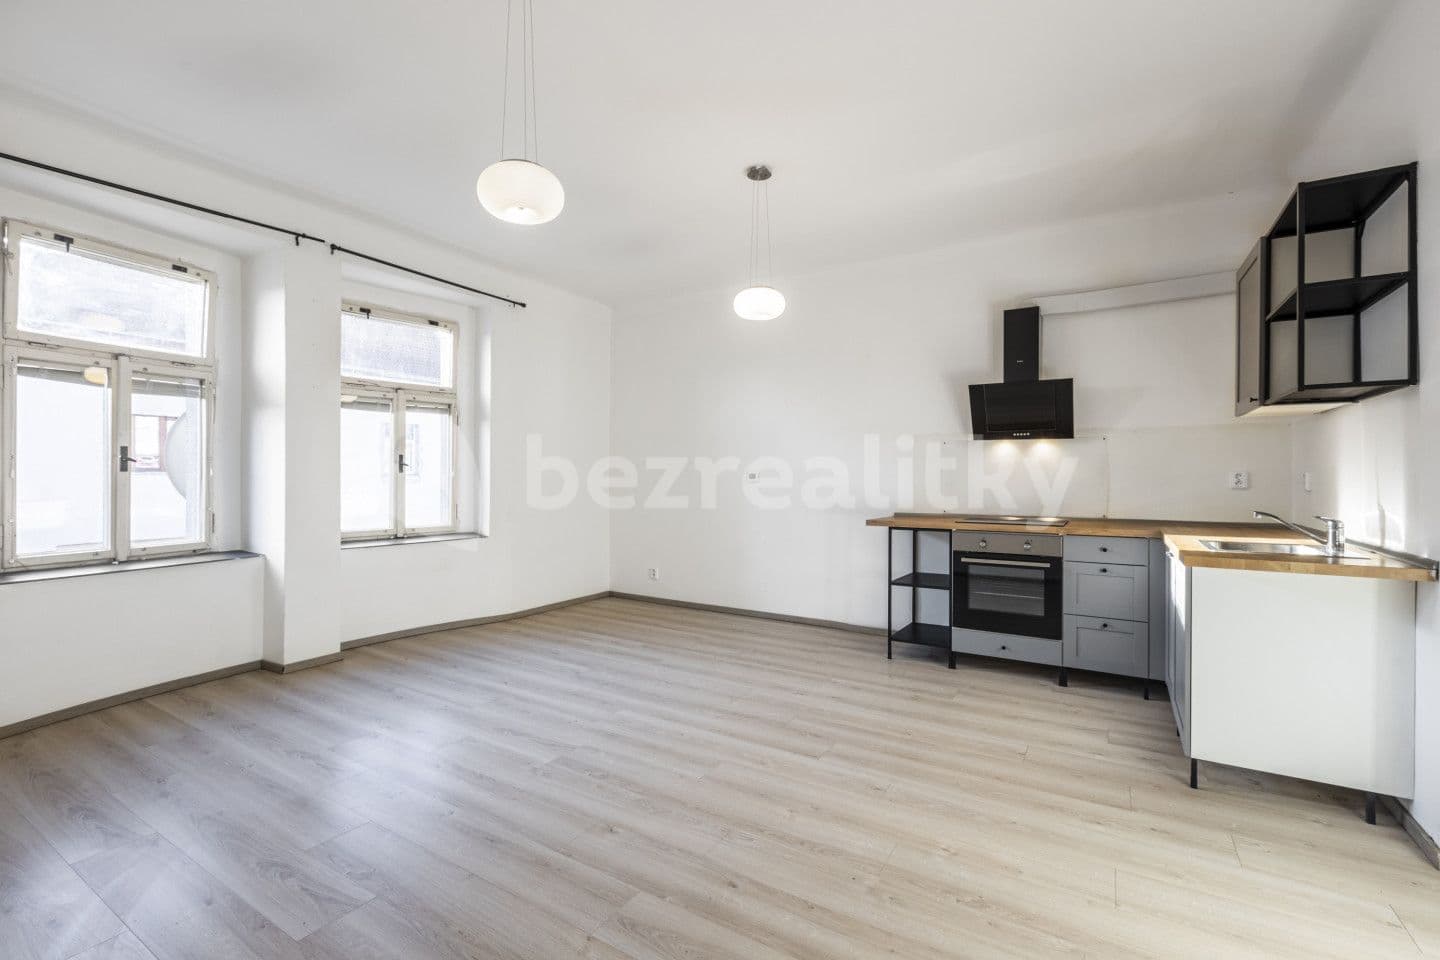 1 bedroom with open-plan kitchen flat for sale, 53 m², Čechova, Kralupy nad Vltavou, Středočeský Region